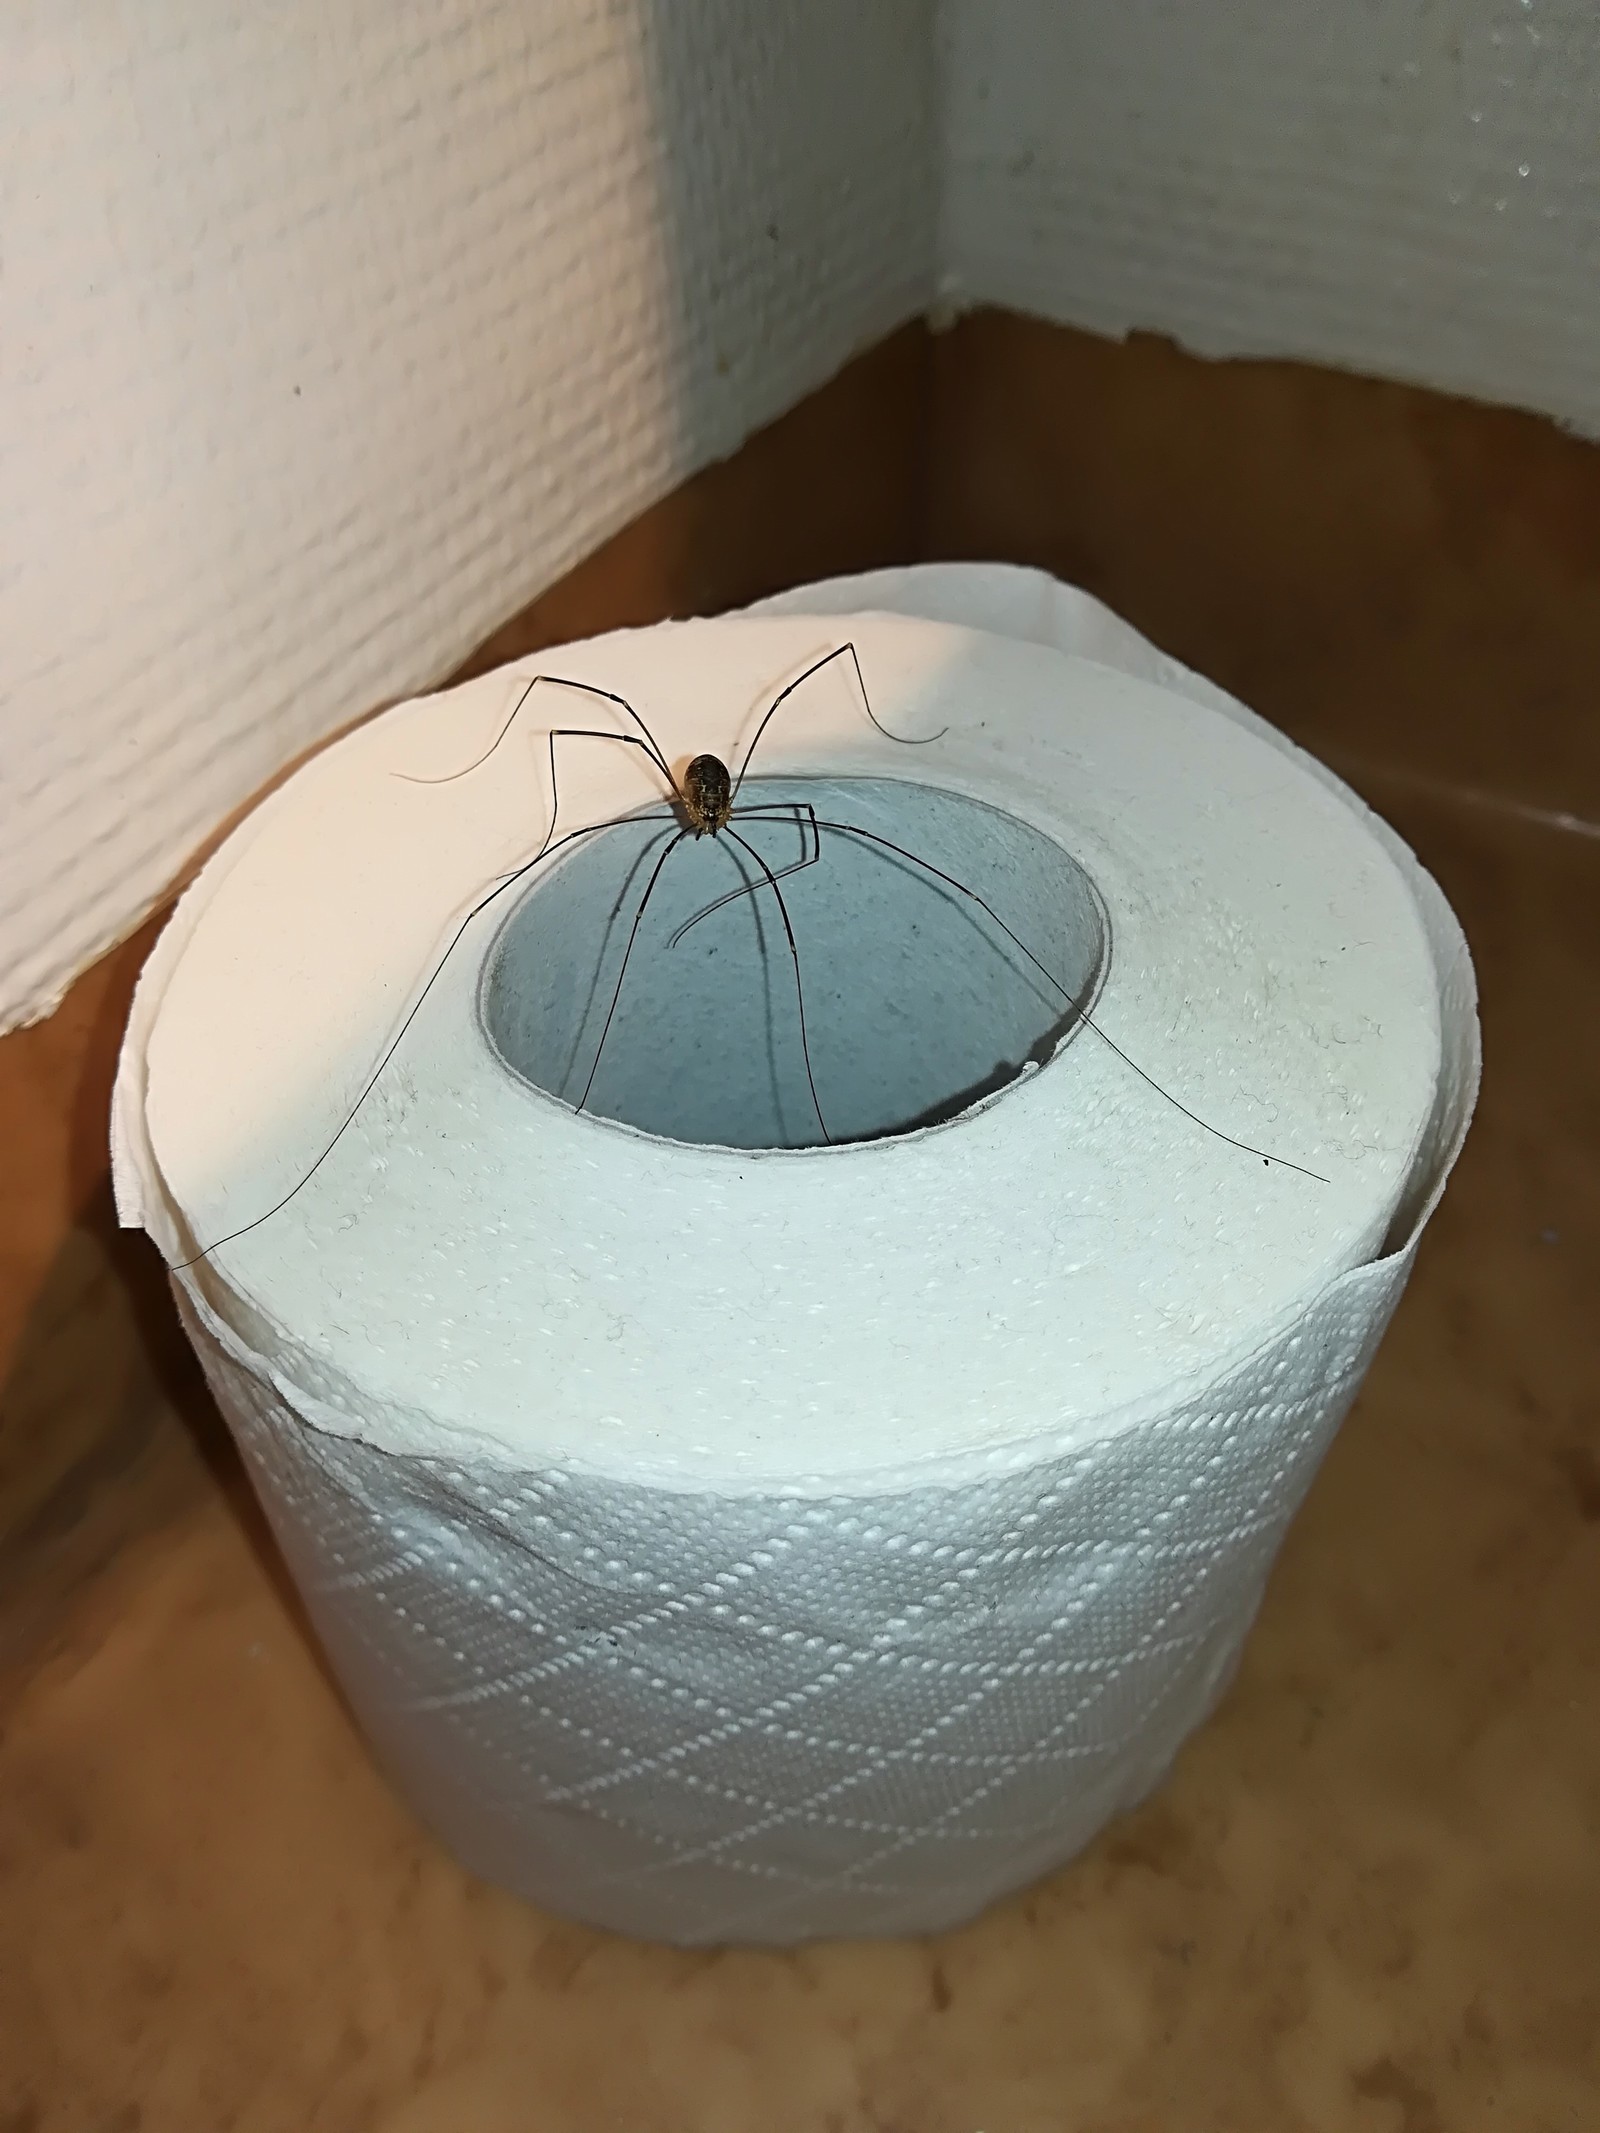 Спайдер туалет. Паук на туалетной бумаге. Вотка туалкт в пауках домашних.